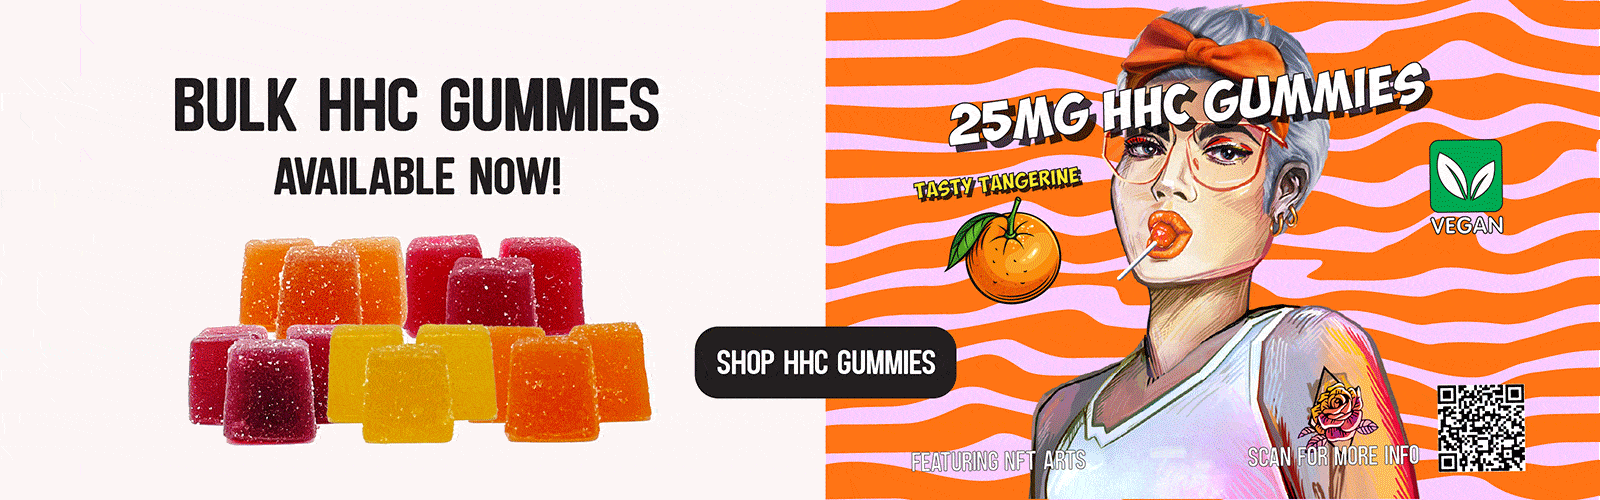 hhc gummies bulk online